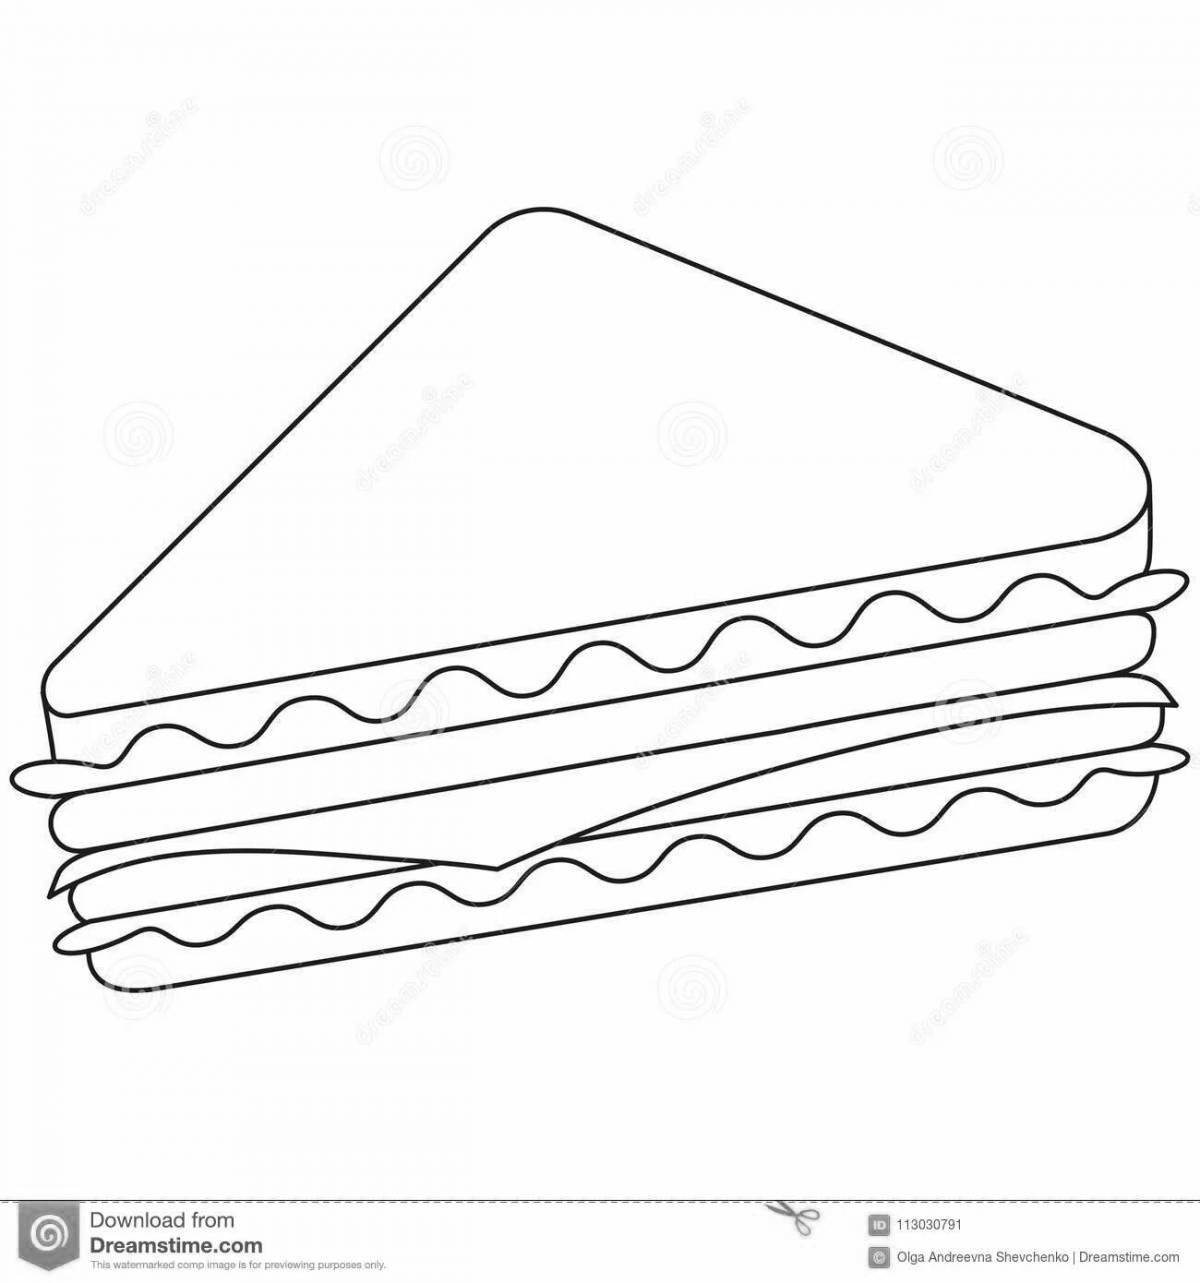 Unique sandwich coloring page for kids